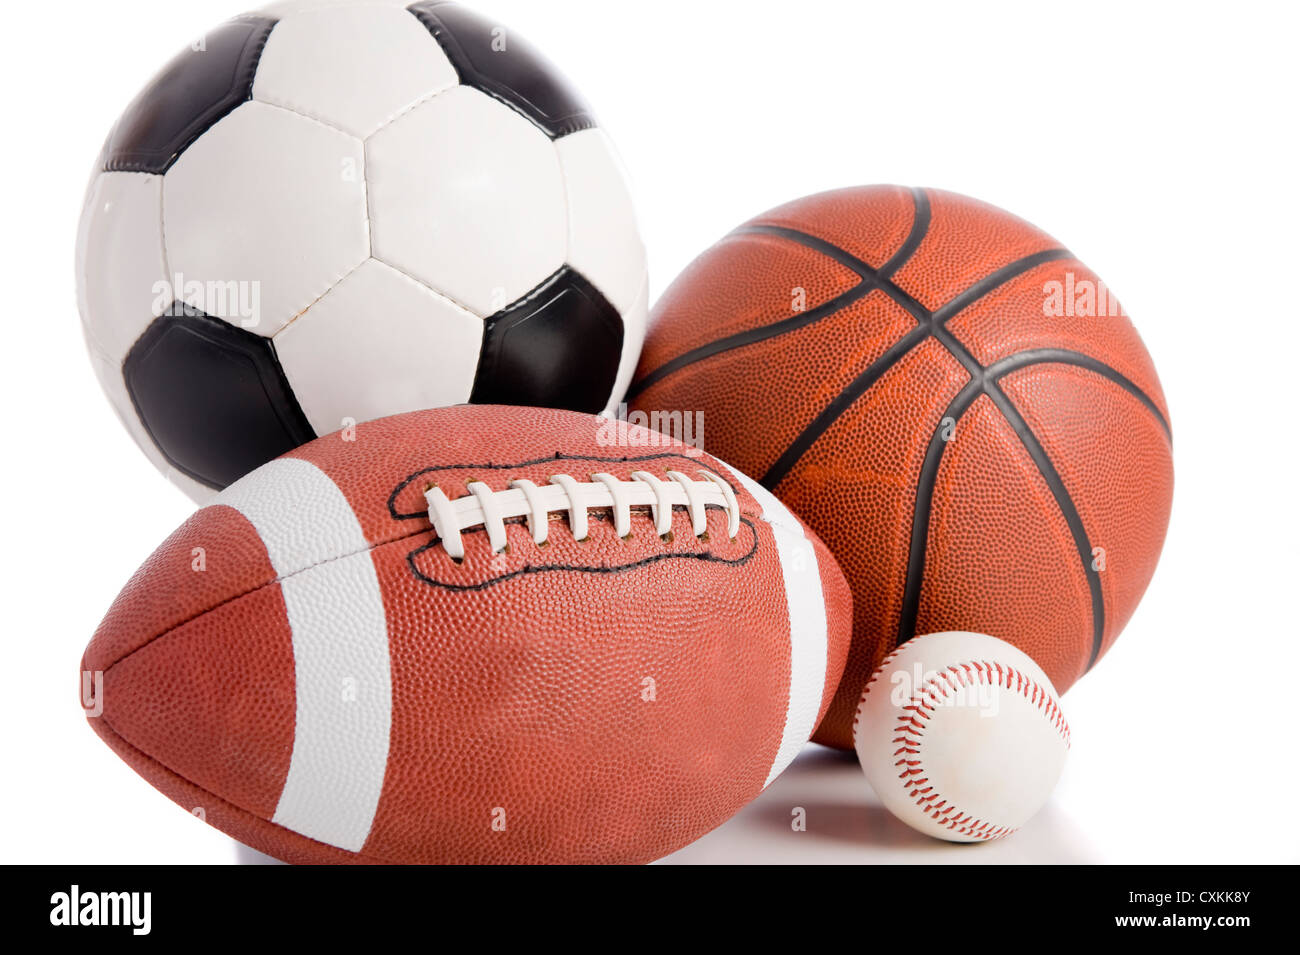 Eine Gruppe von Sportbälle auf weißem Grund, darunter ein Baseball, ein American Football, ein Basketball und Fußball Stockfoto